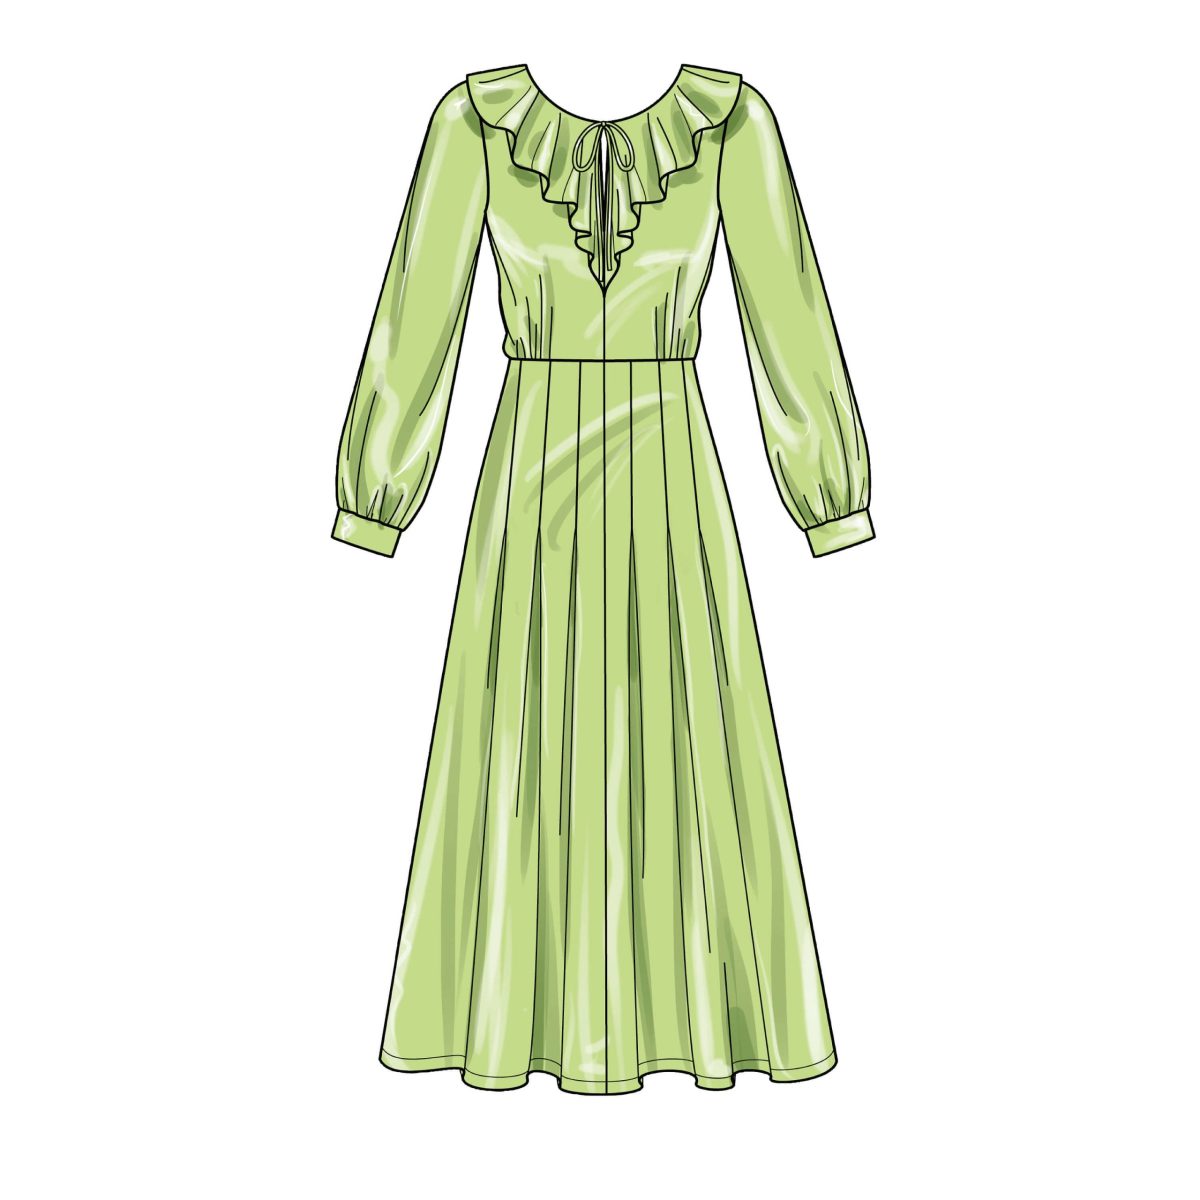 New Look Sewing Pattern N6695 Misses' Dresses